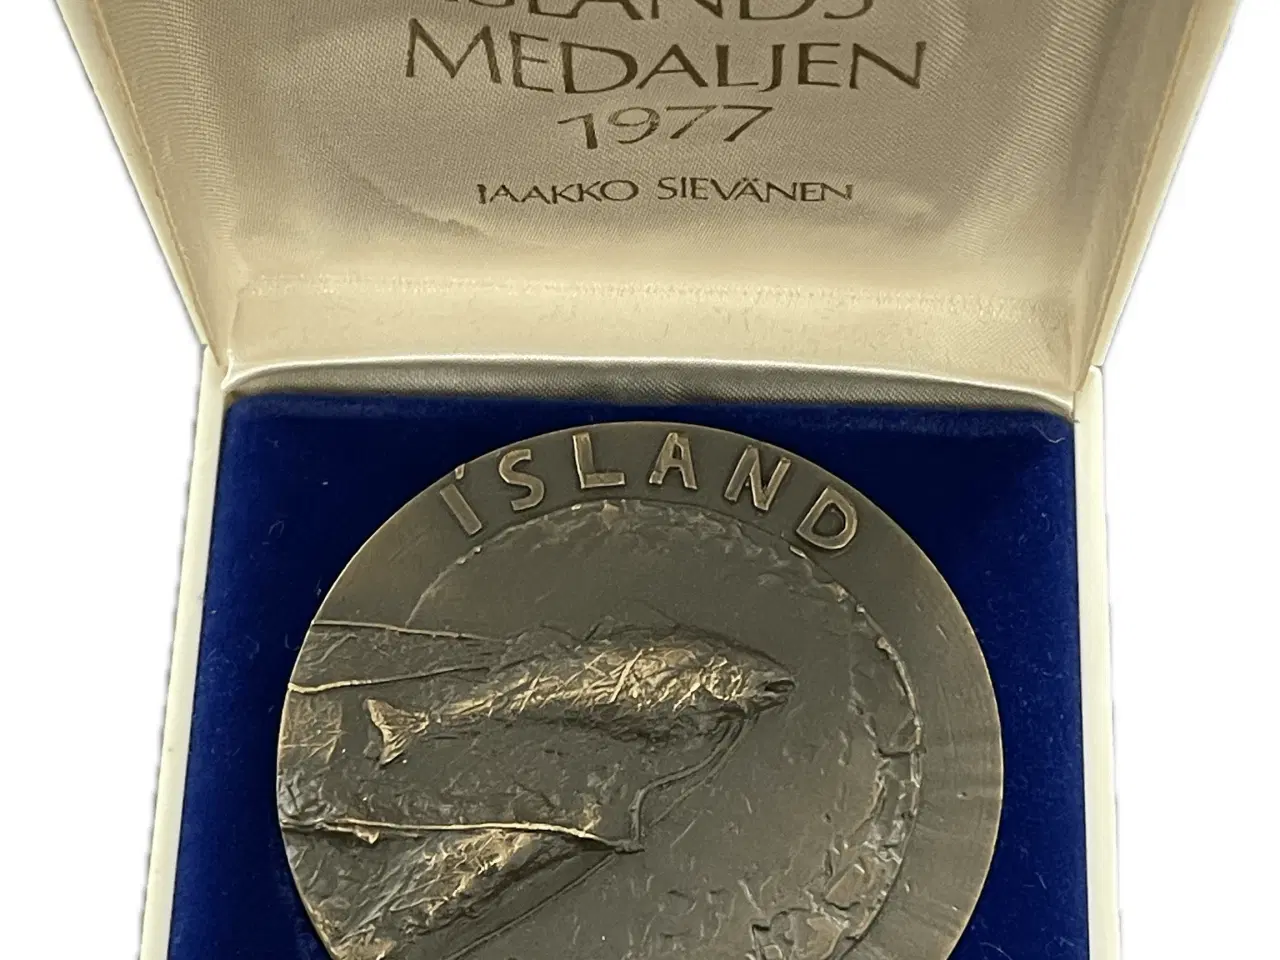 Billede 1 - Island medaljen 1977